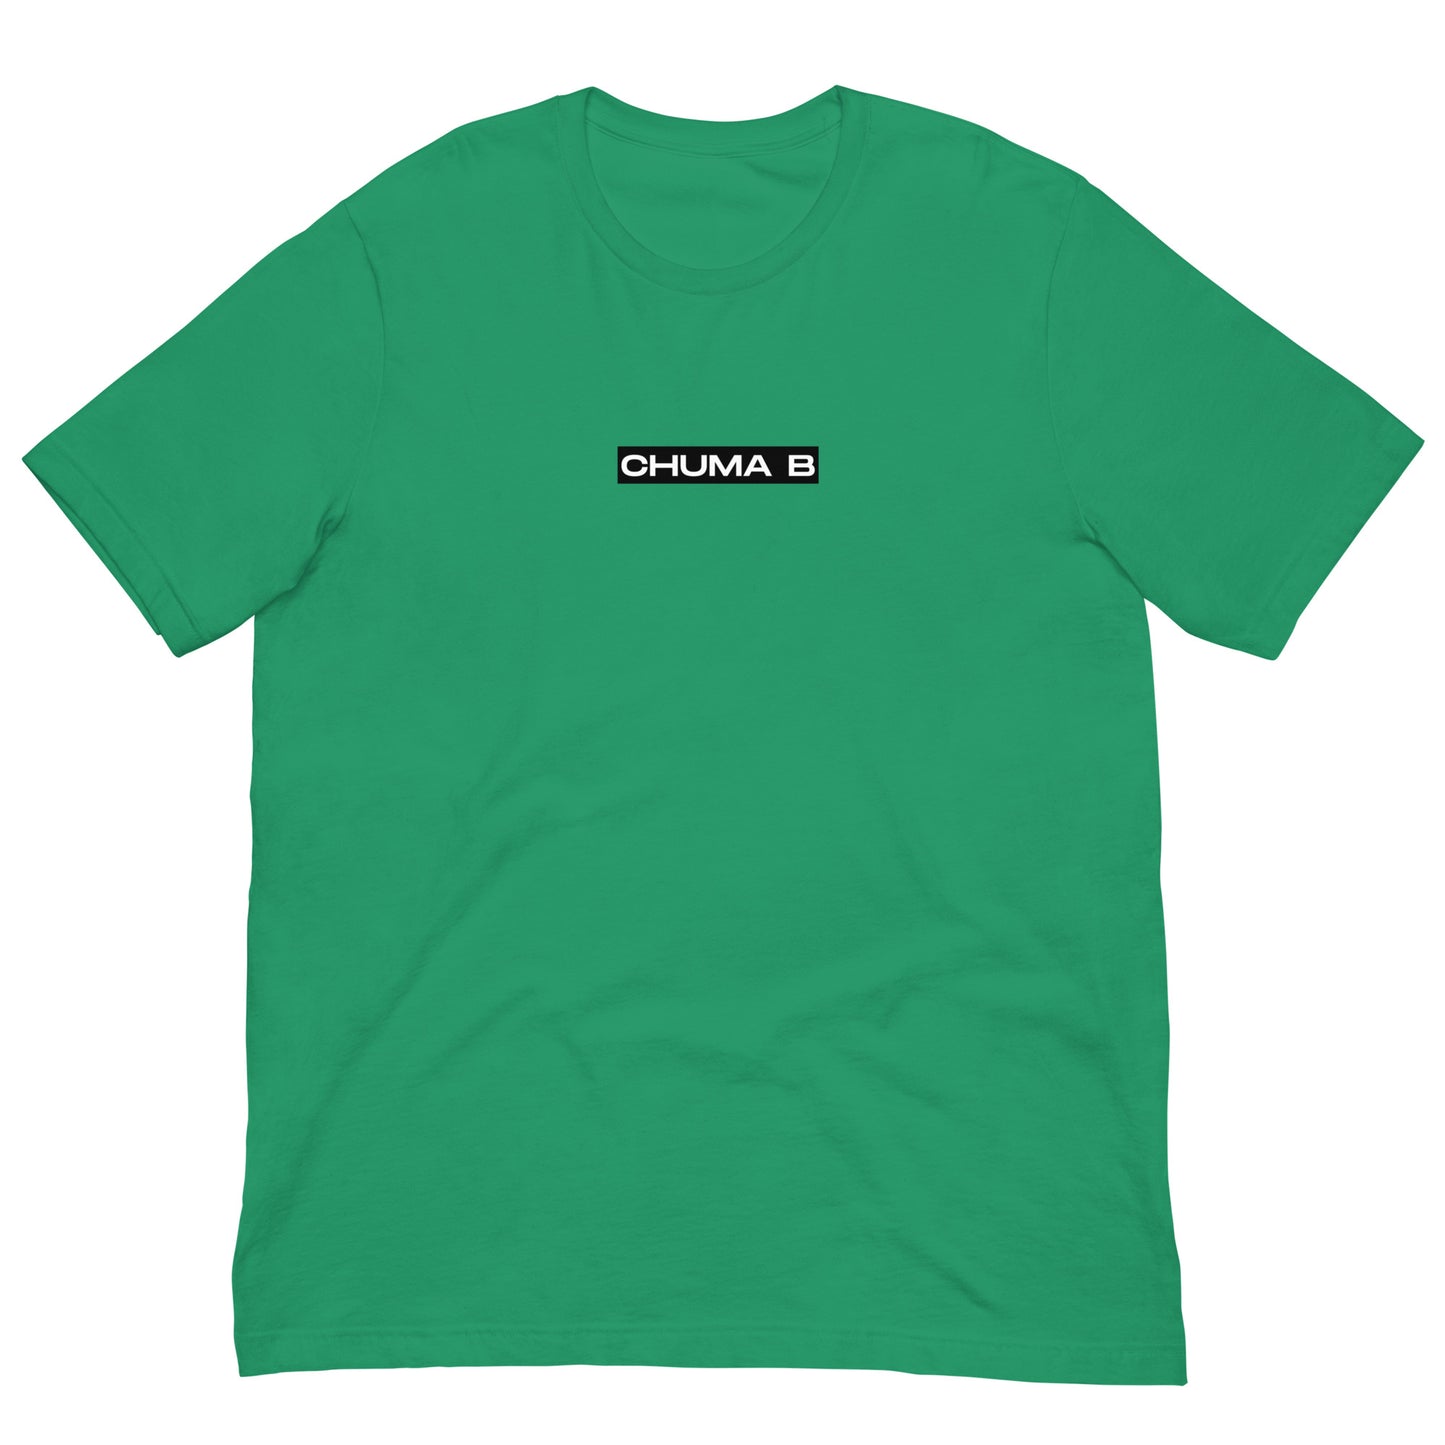 CHUMA B - T-shirt